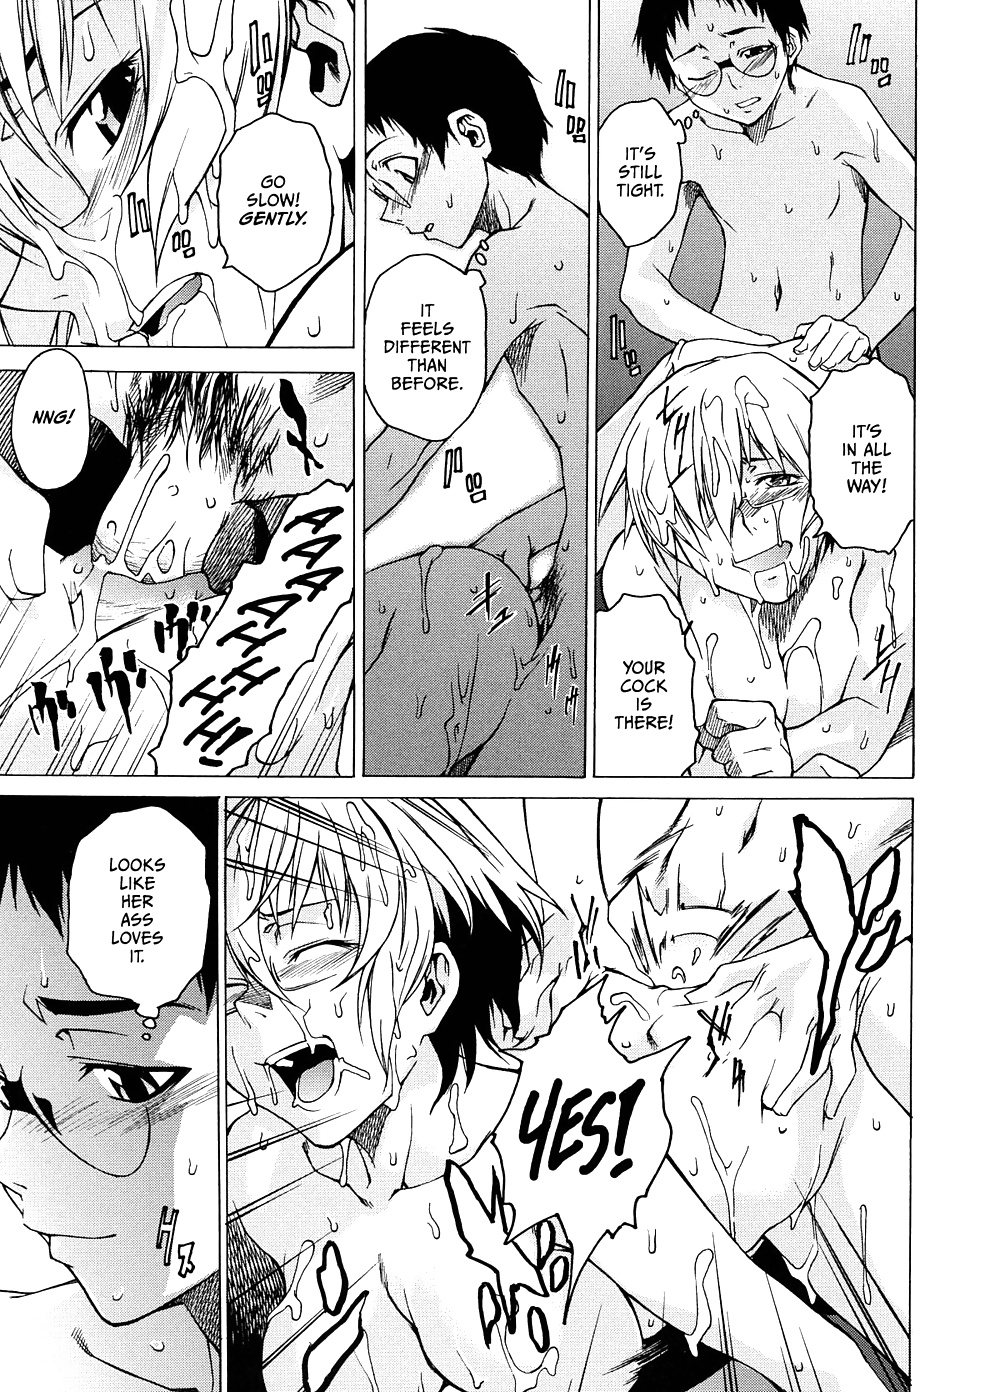 Domin-8 Me ( Take On me ) Hentai Manga Part 2 (13/98)